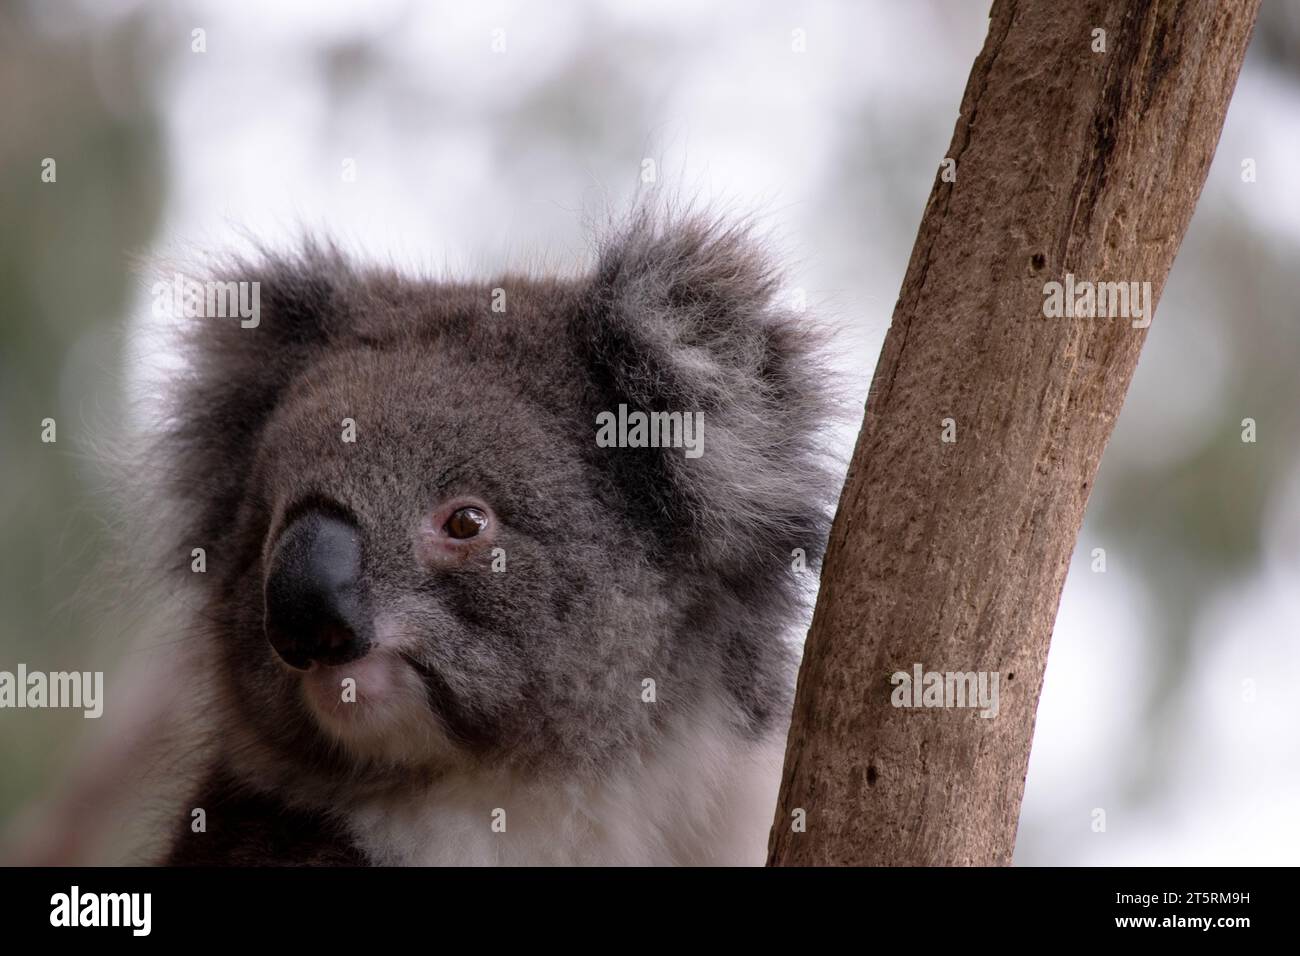 Le Koala a une grande tête ronde, de grandes oreilles de fourrure et un gros nez noir. Leur fourrure est habituellement de couleur gris-brun avec la fourrure blanche sur la poitrine, les bras intérieurs, Banque D'Images